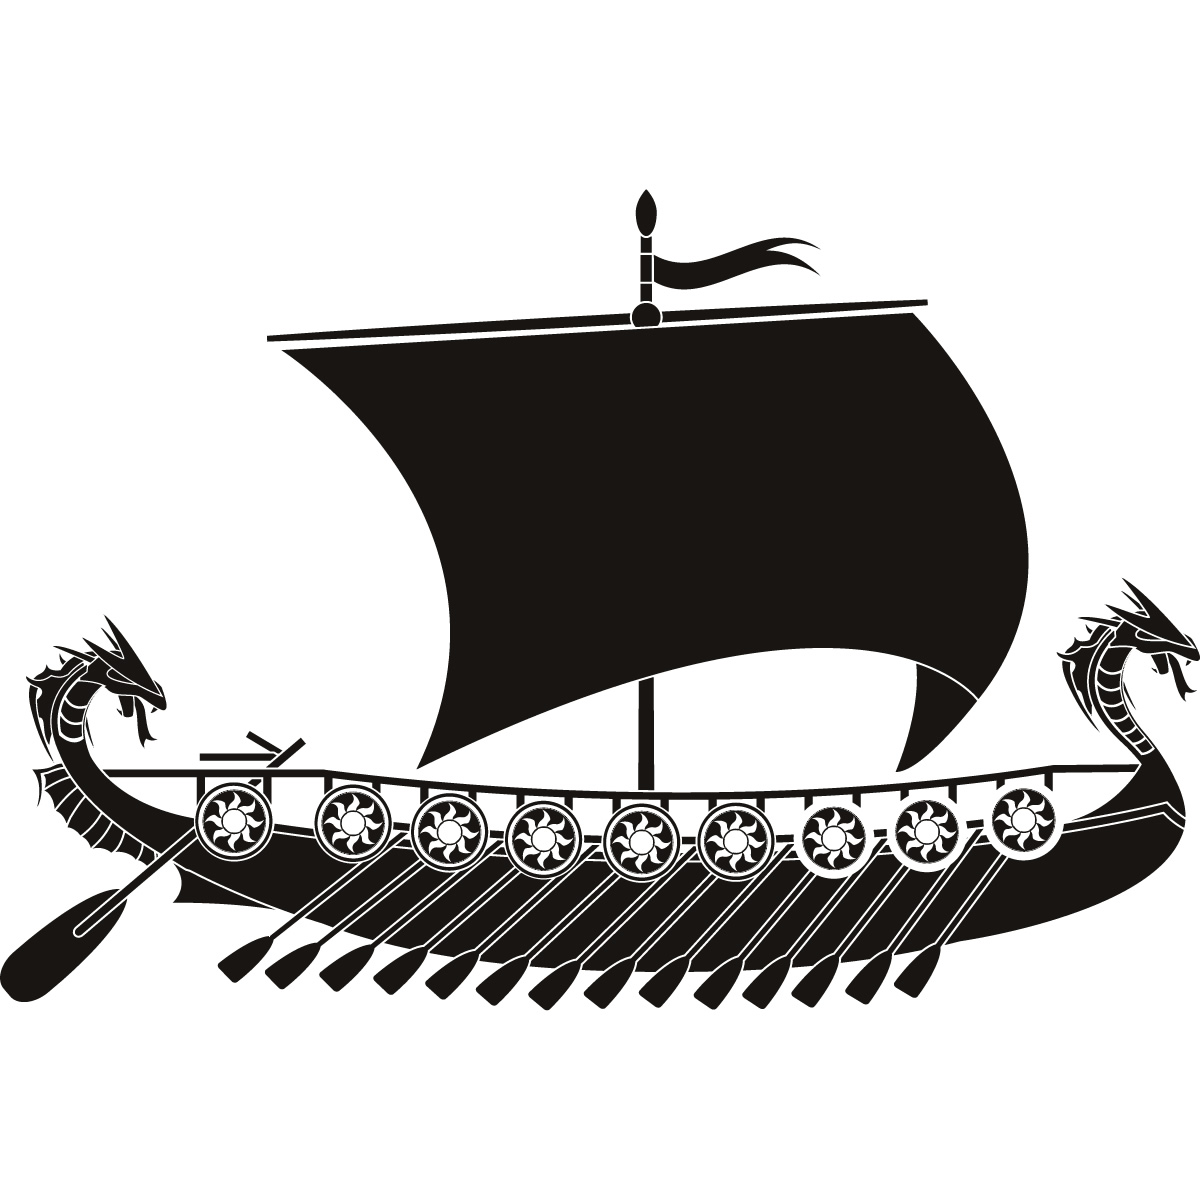 Лодка викингов дракар